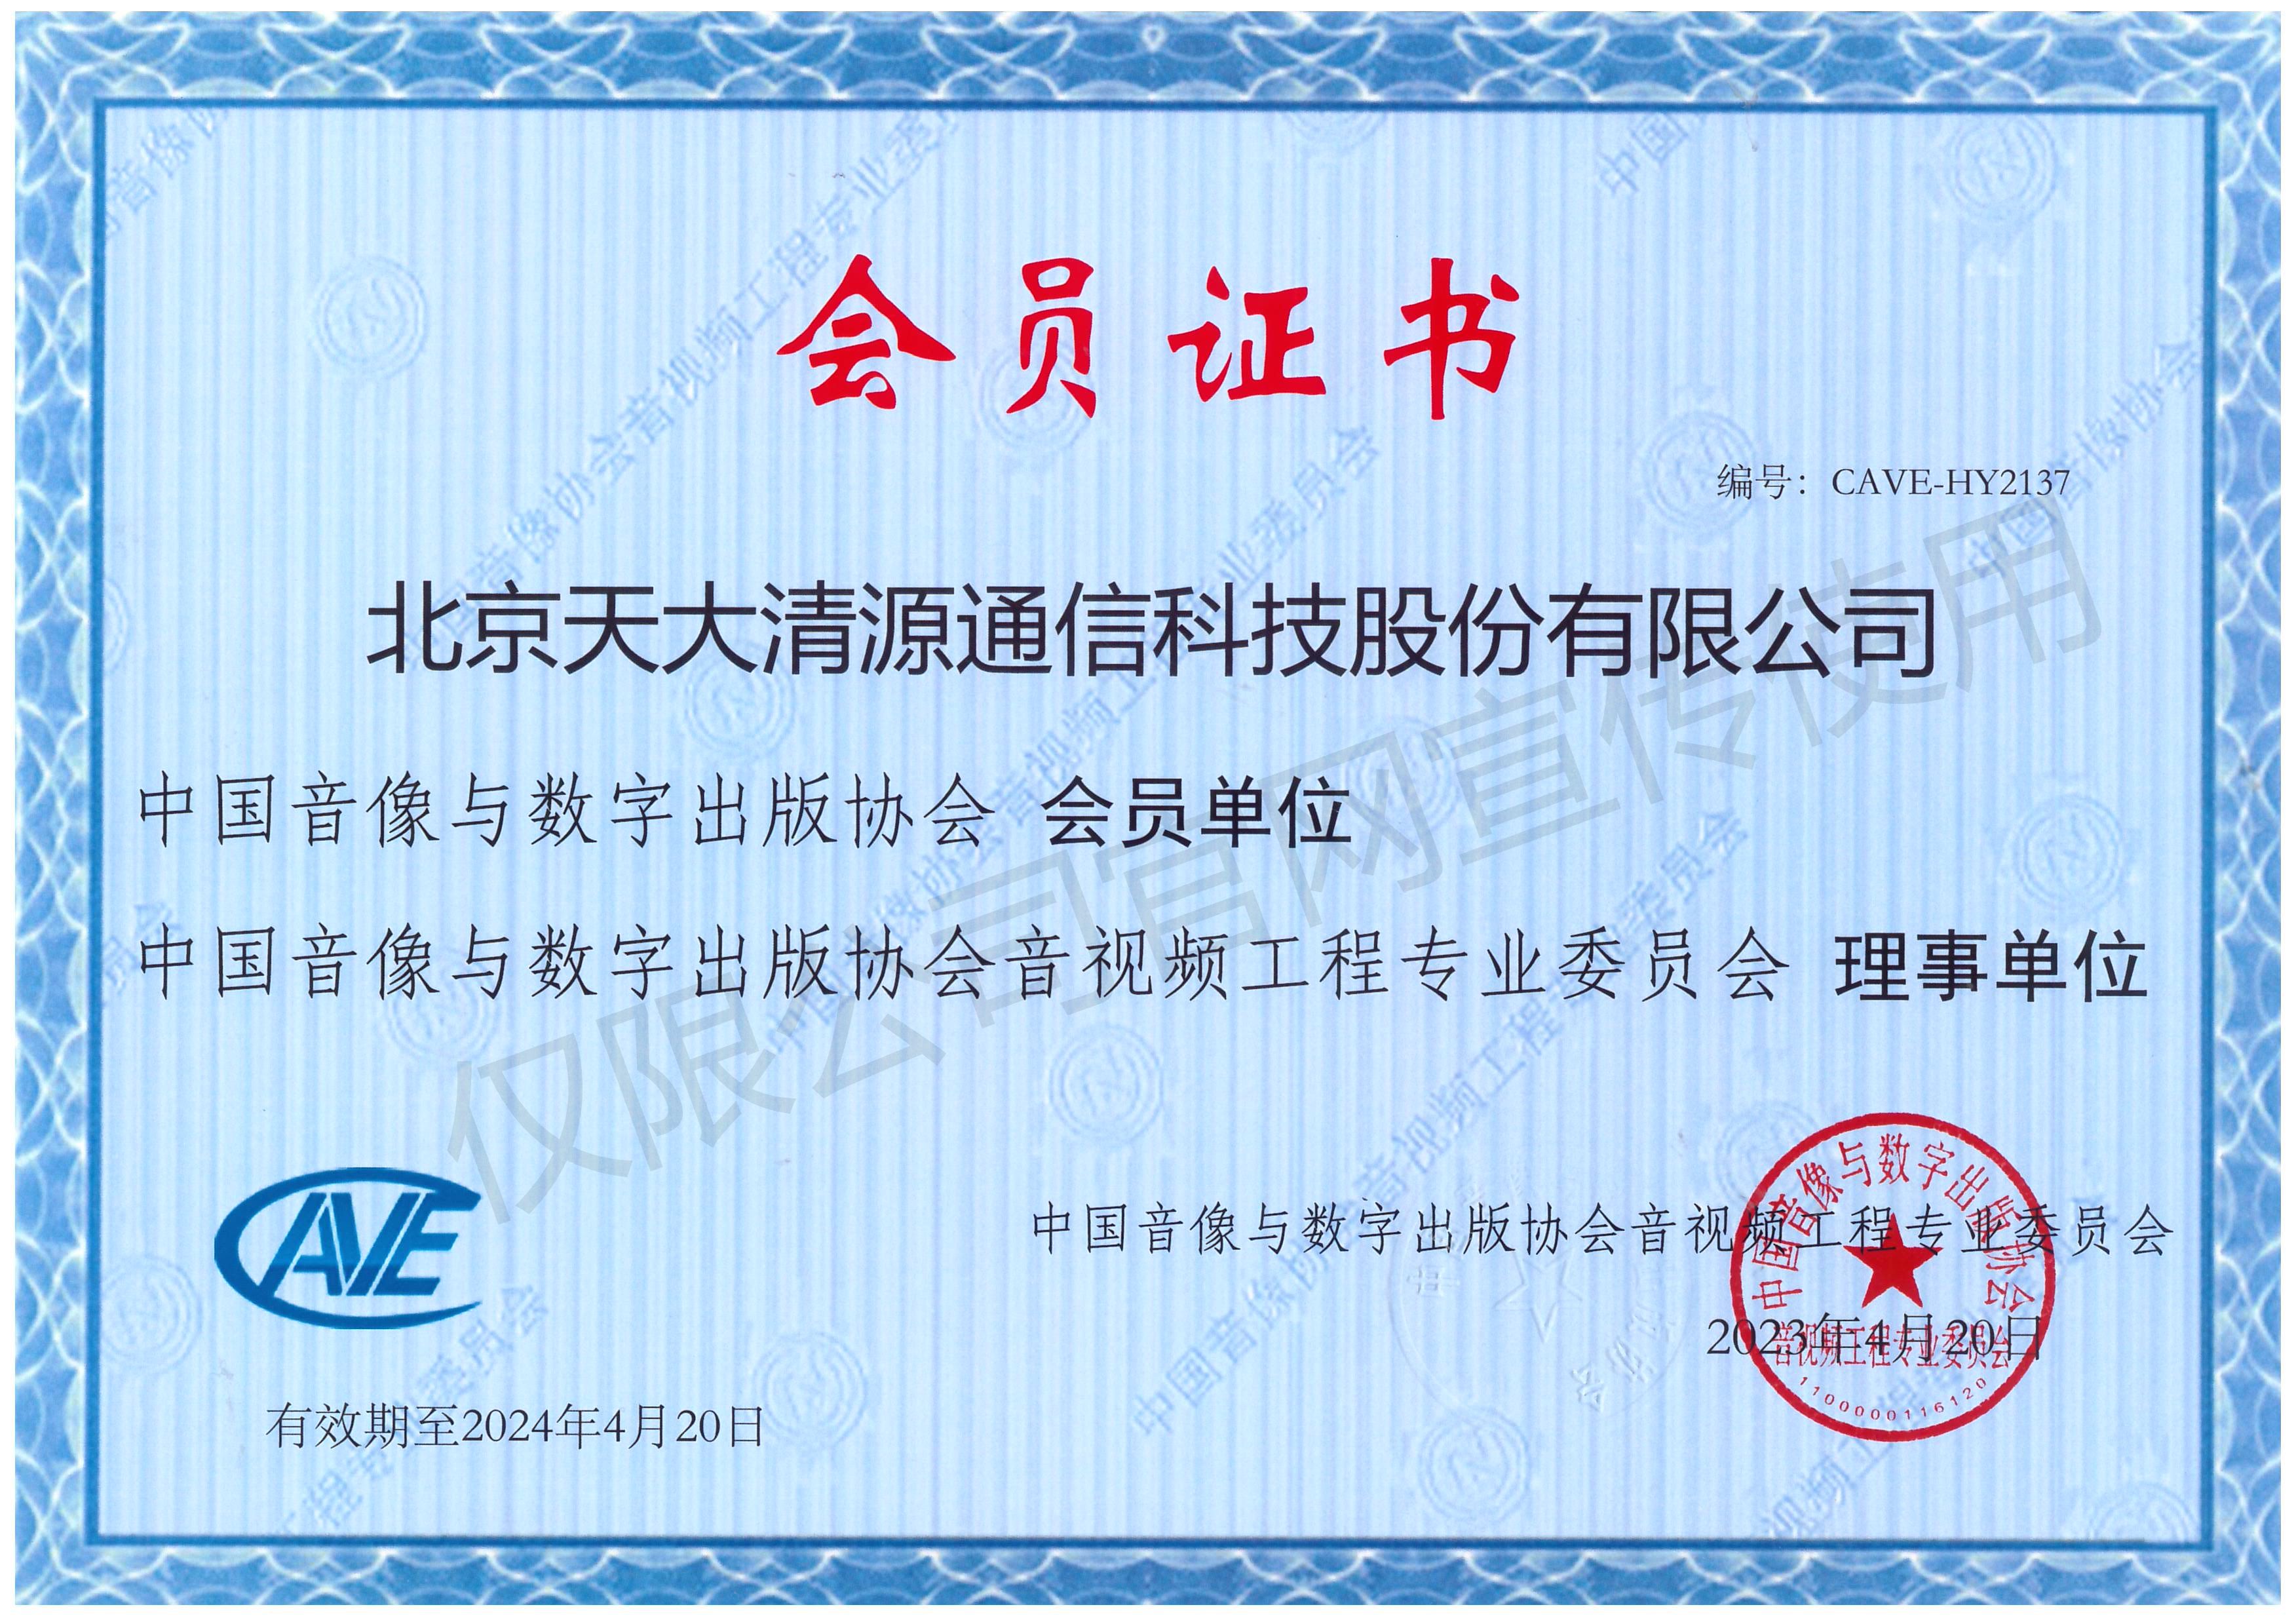 中国音像与数字出版协会会员单位证书_澳门太阳游戏网站